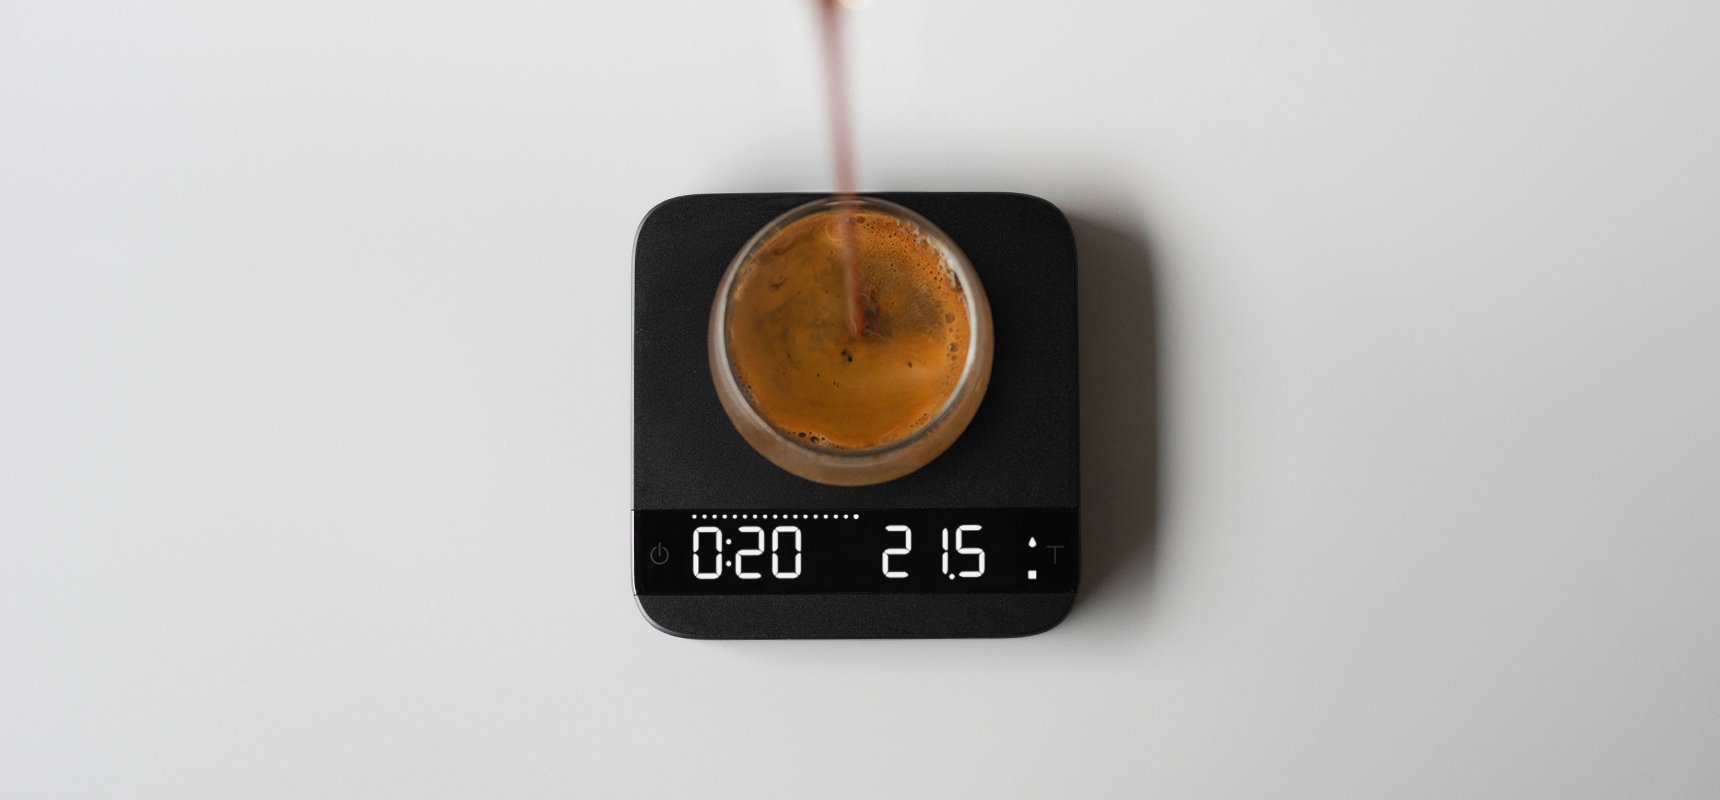 Acaia Lunar Espresso Scale